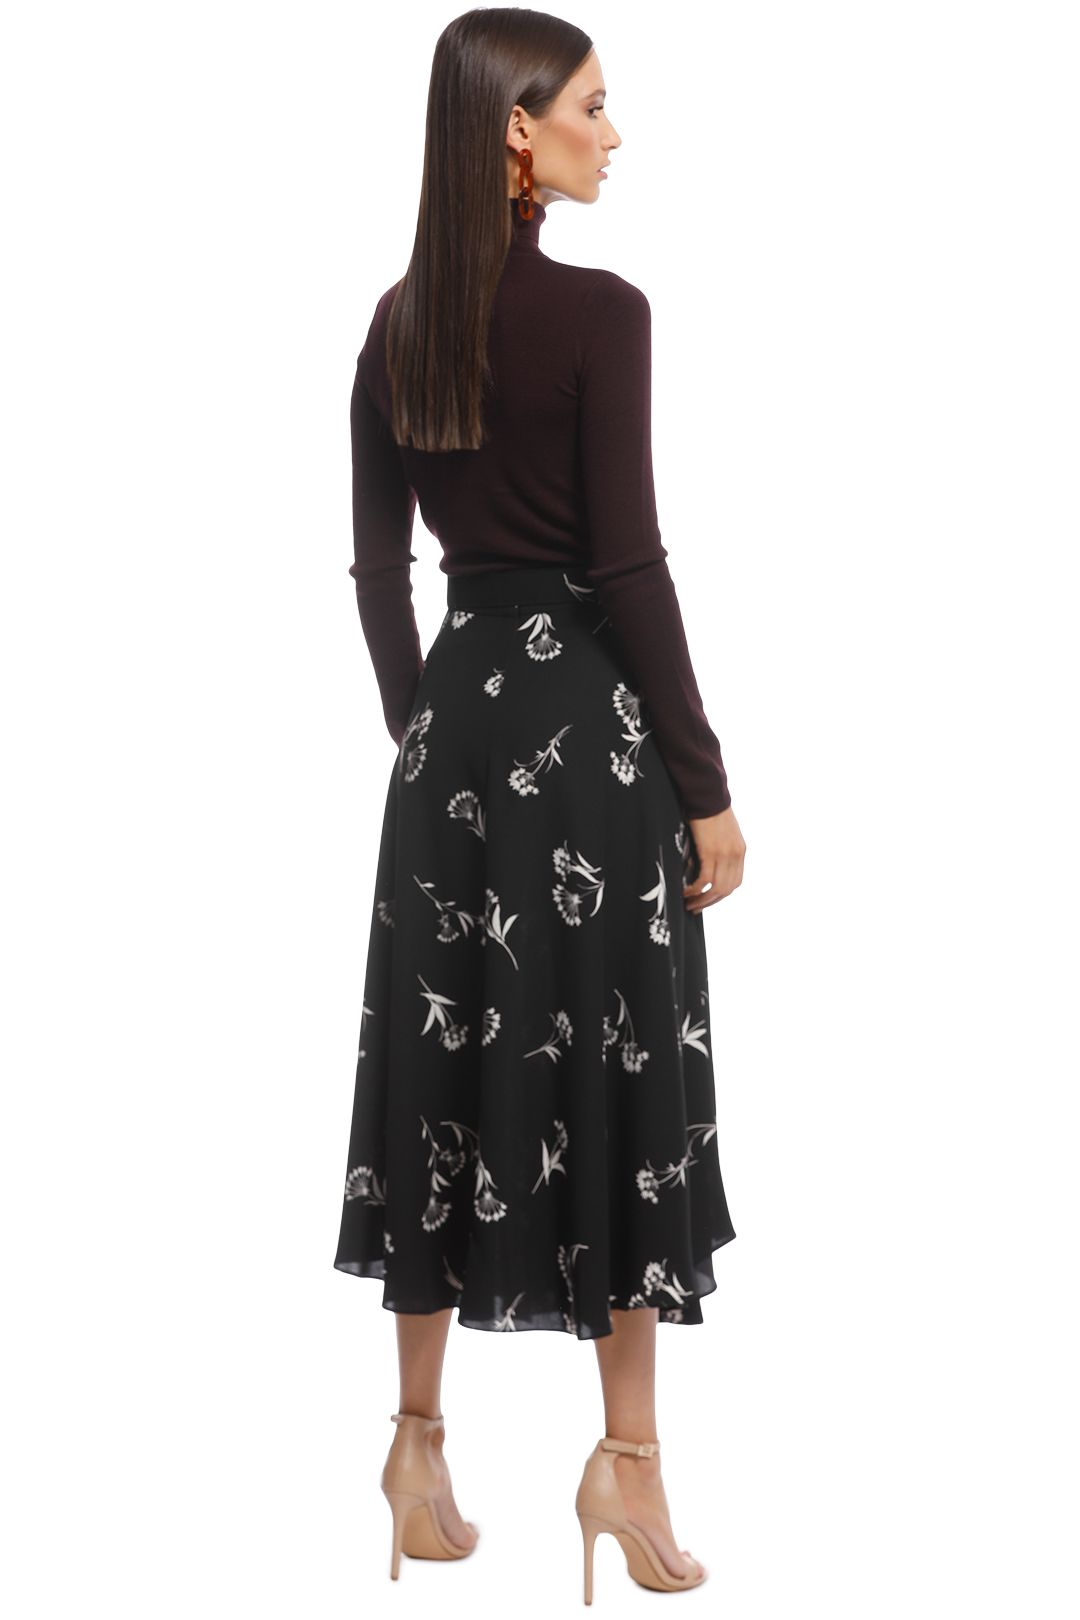 Veronika Maine - Fan Flowers Belted Skirt - Black Floral - Back